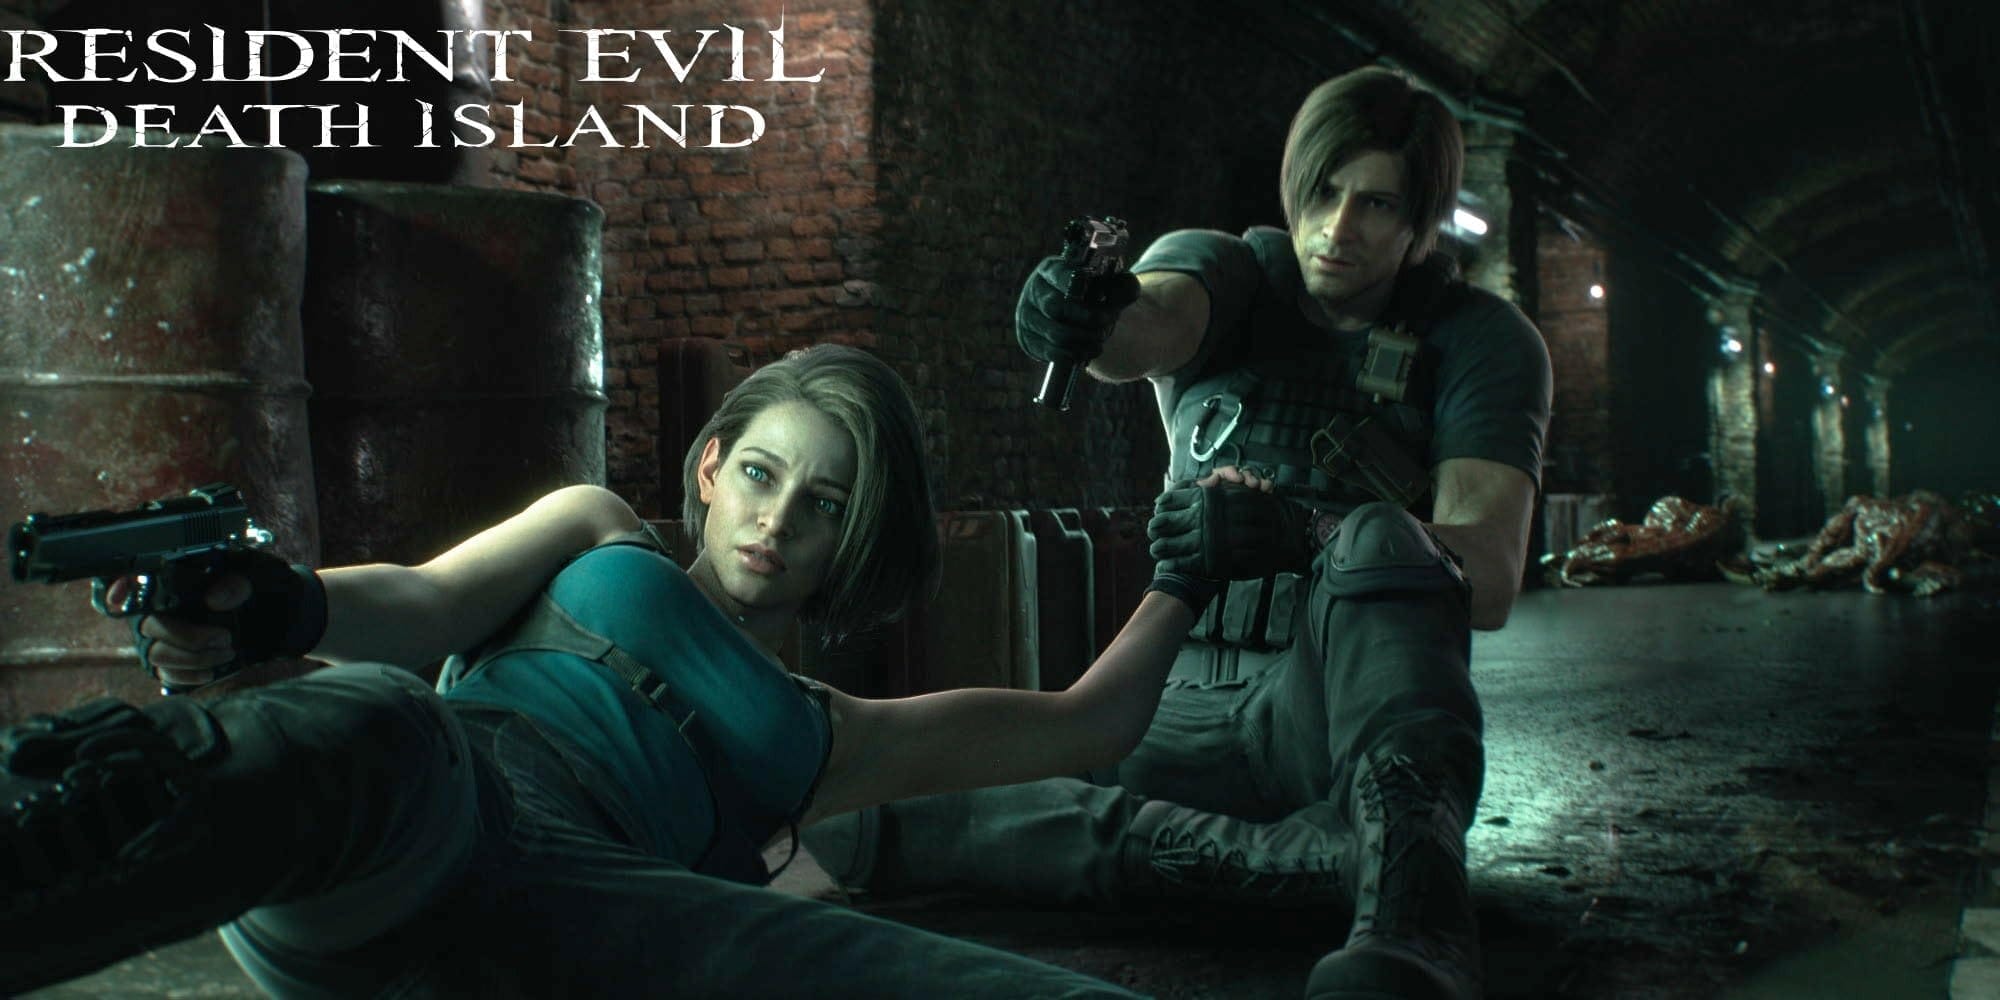 Bildschirmfoto aus dem Film Resident Evil: Death Island von Sony Pictures.